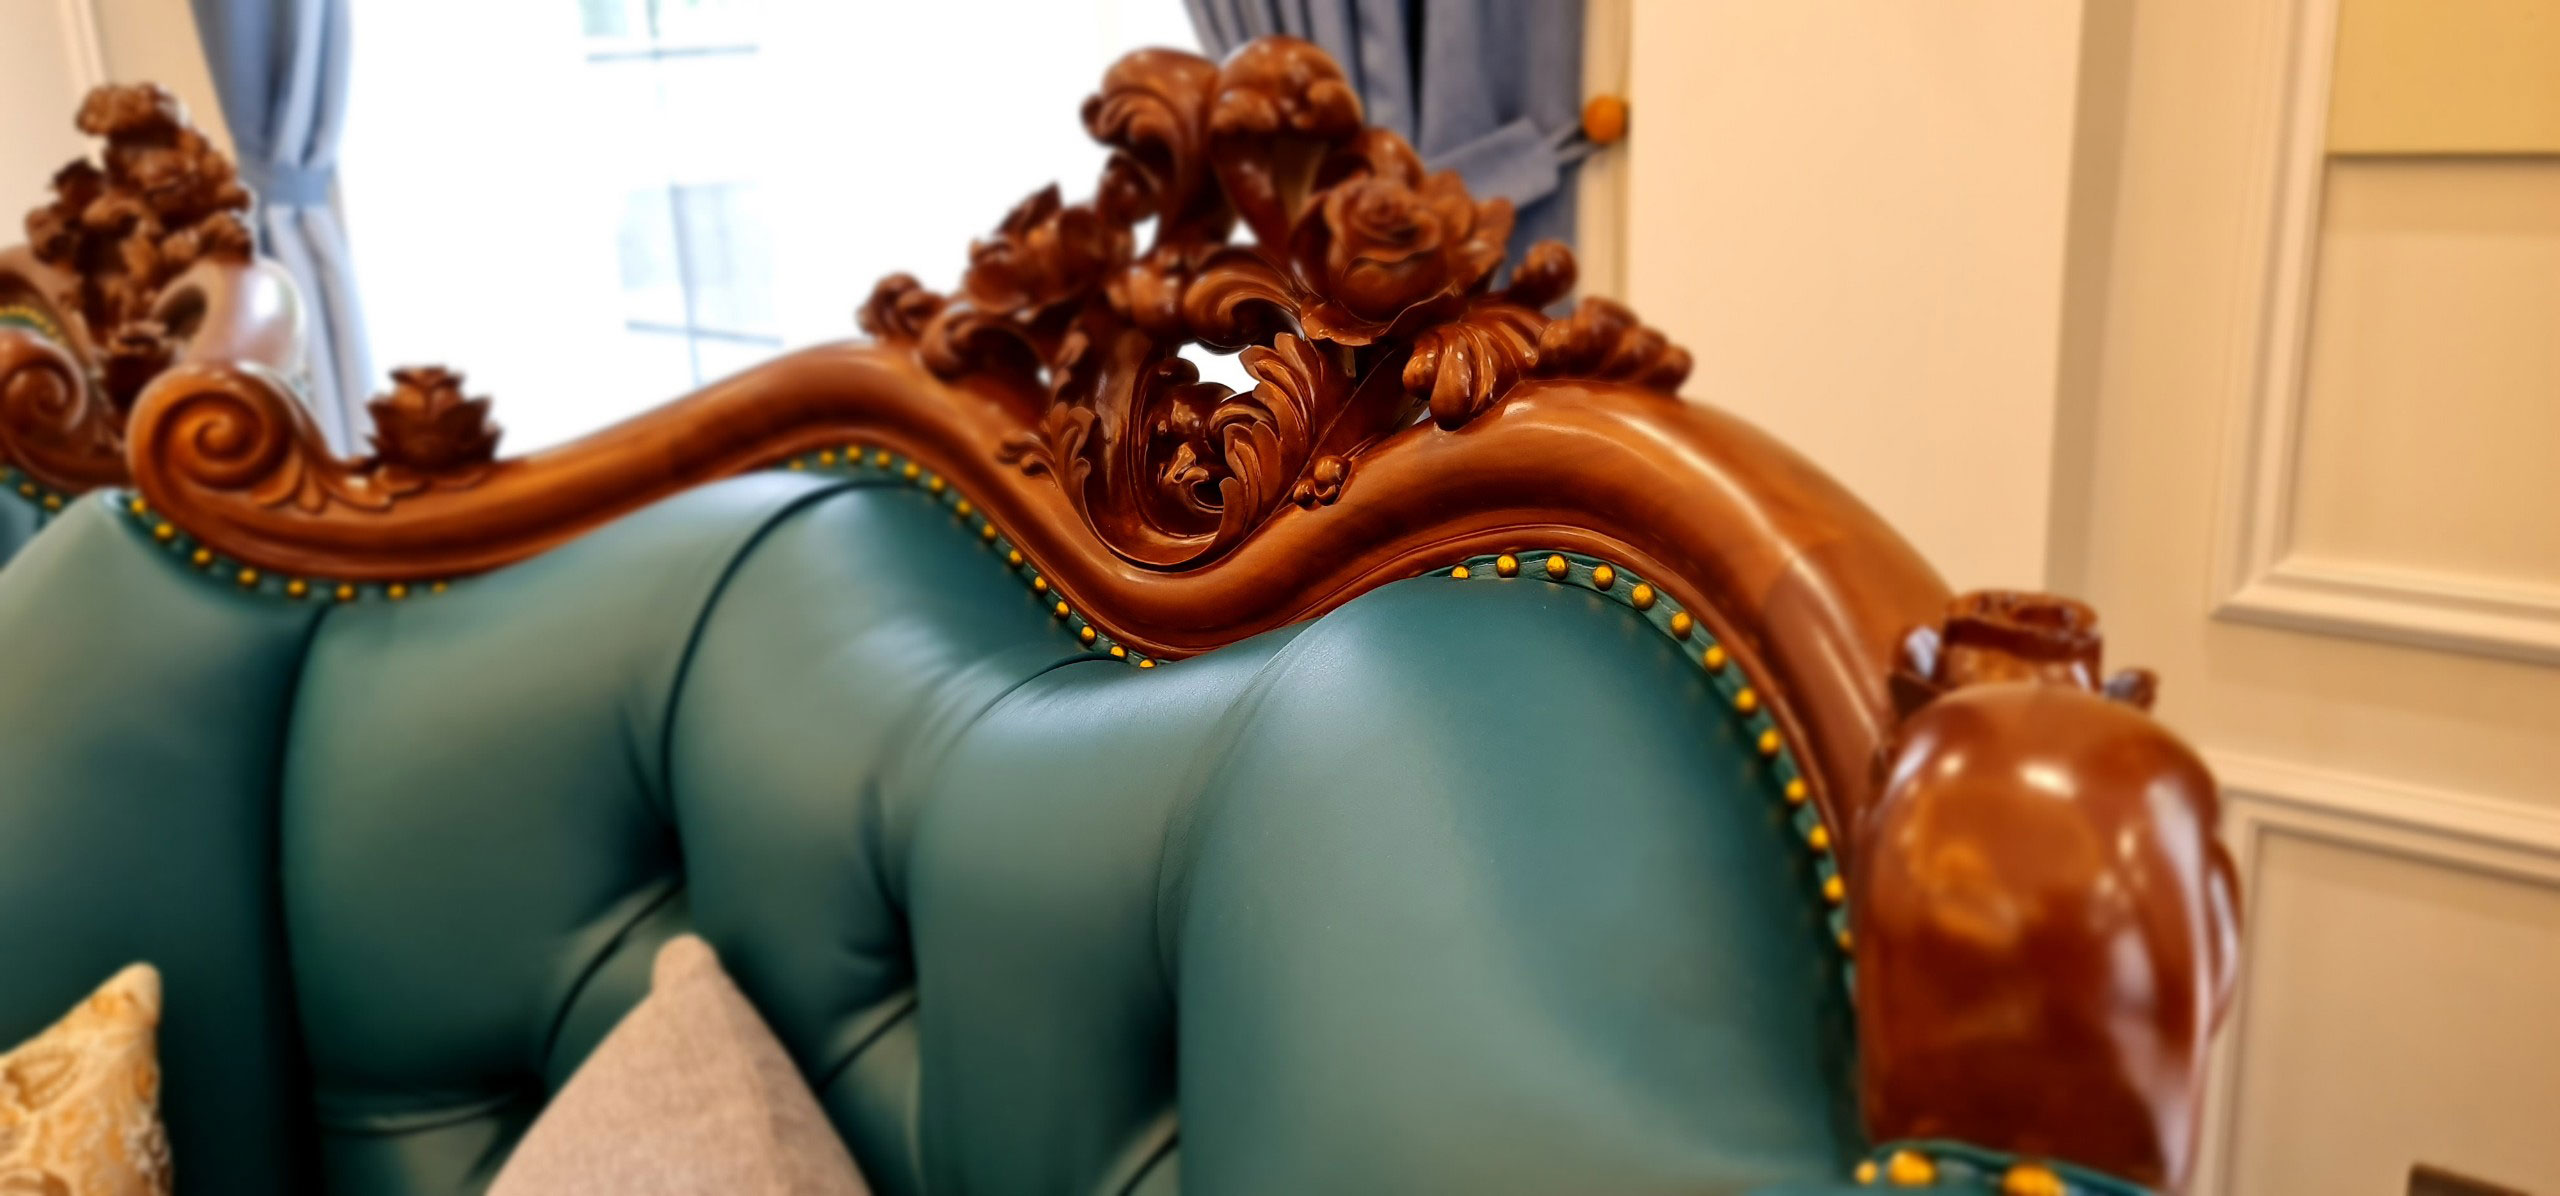 Hoa văn ghế dài sofa mang đến màu sắc riêng trong thiết kế nội thất biệt thự